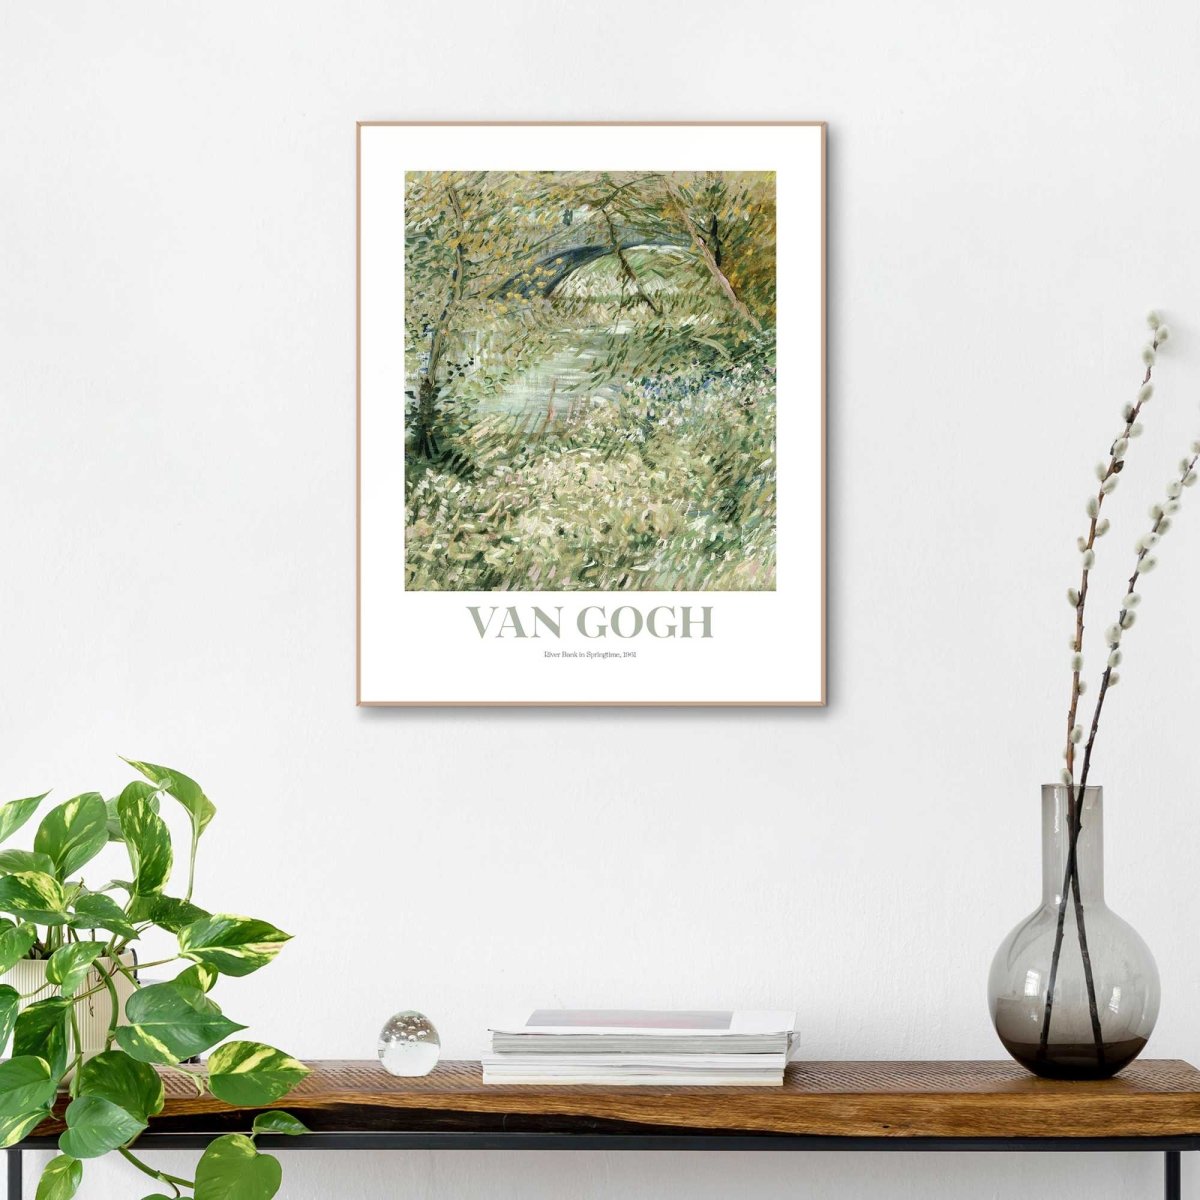 Schilderij Van Gogh - riverbank in springtime 50x40 - Reinders